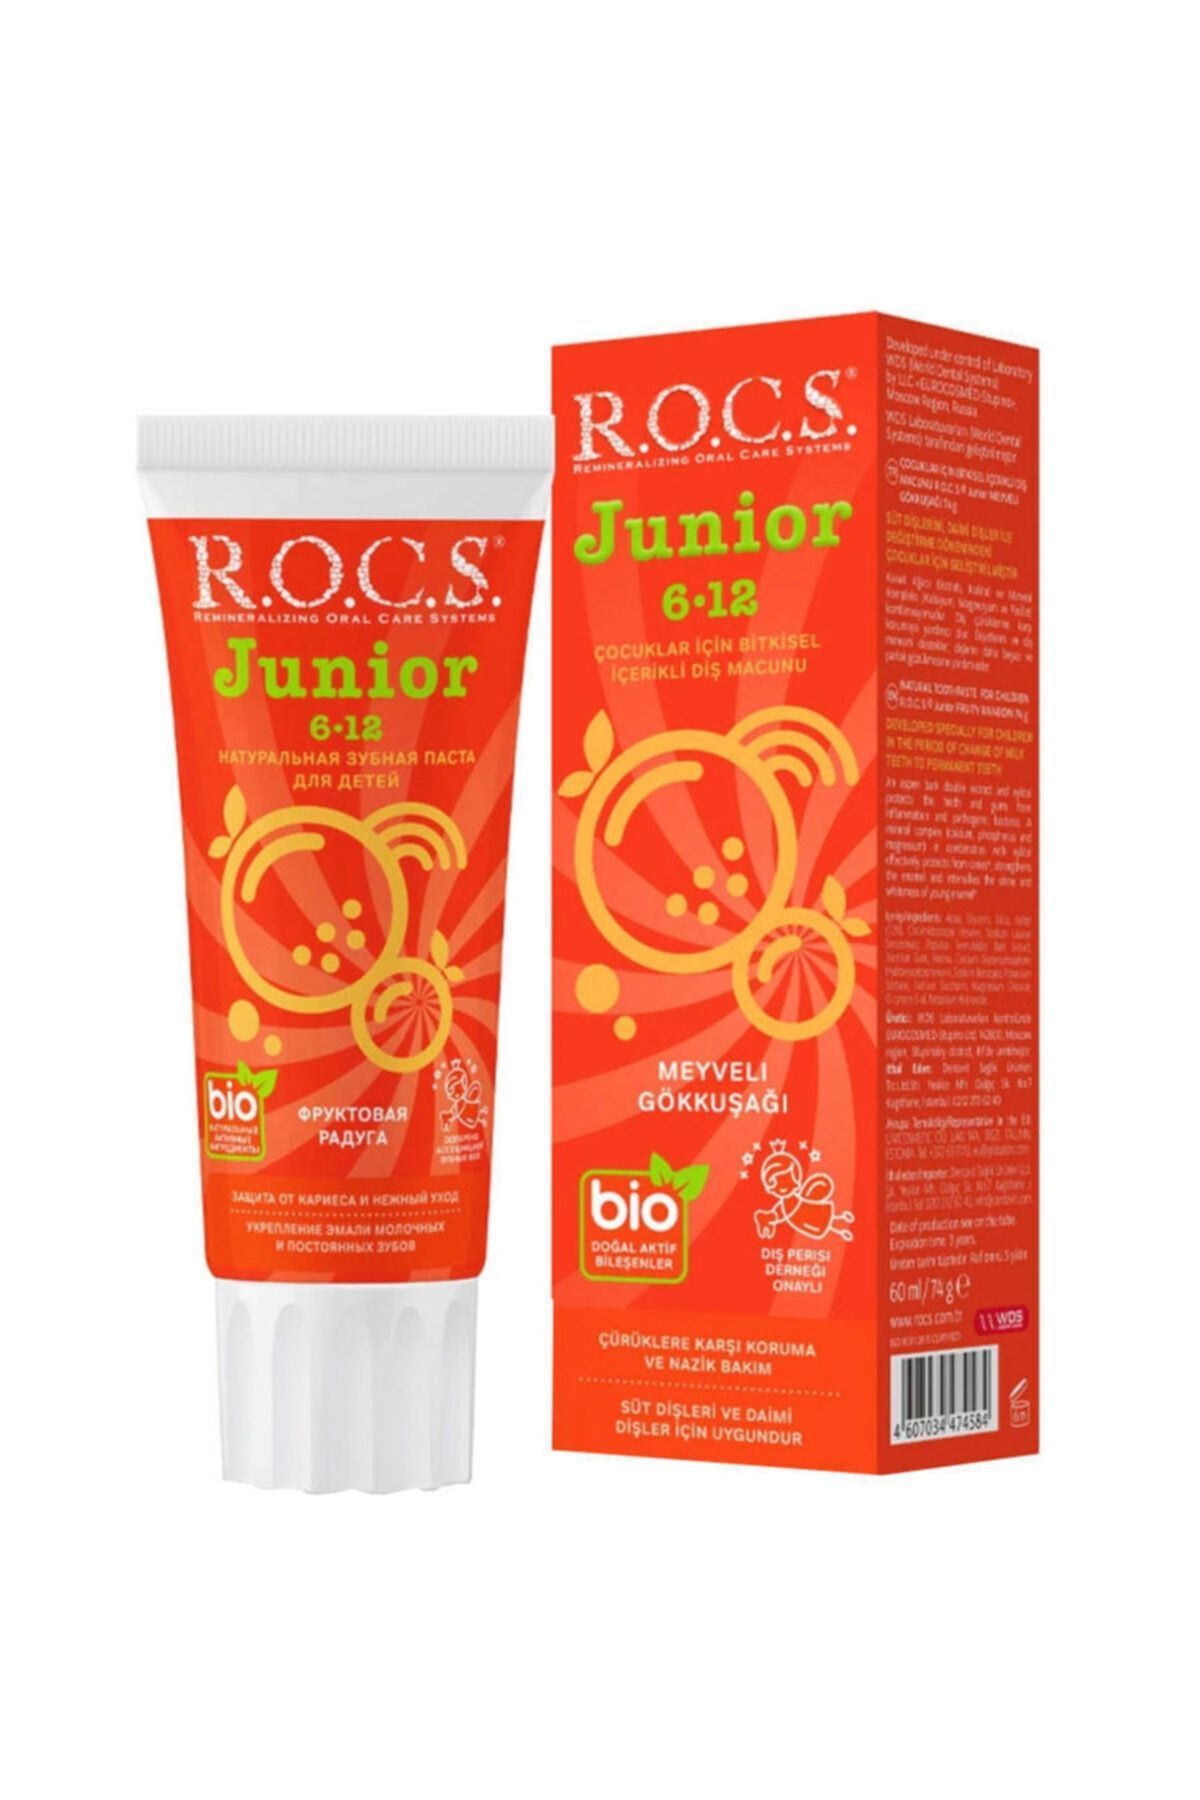 Simple R.O.C.S. Rocs Junior Meyveli Gökkuşağı Diş Macunu 74 g (6-12 Yaş)